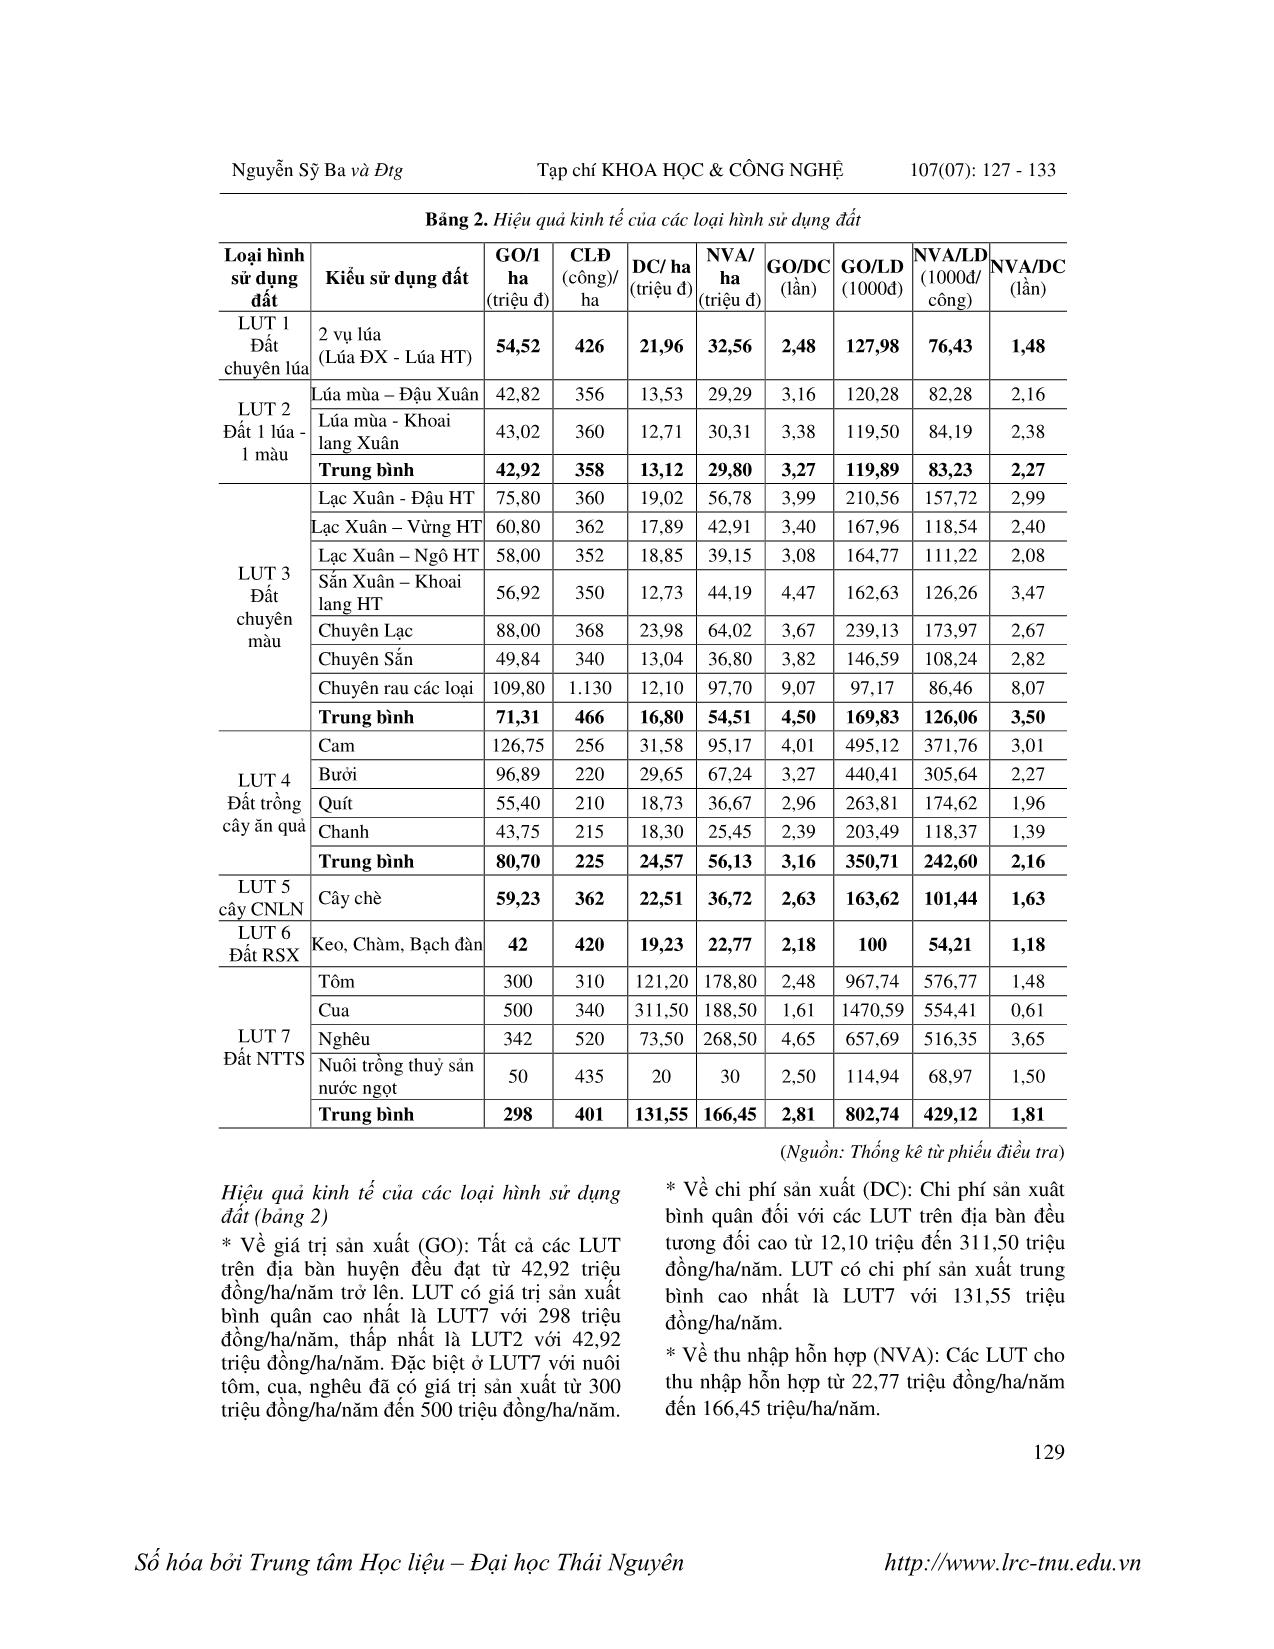 Đánh giá hiệu quả sử dụng đất nông nghiệp ở huyện Kỳ Anh, tỉnh Hà Tĩnh năm 2012 trang 3